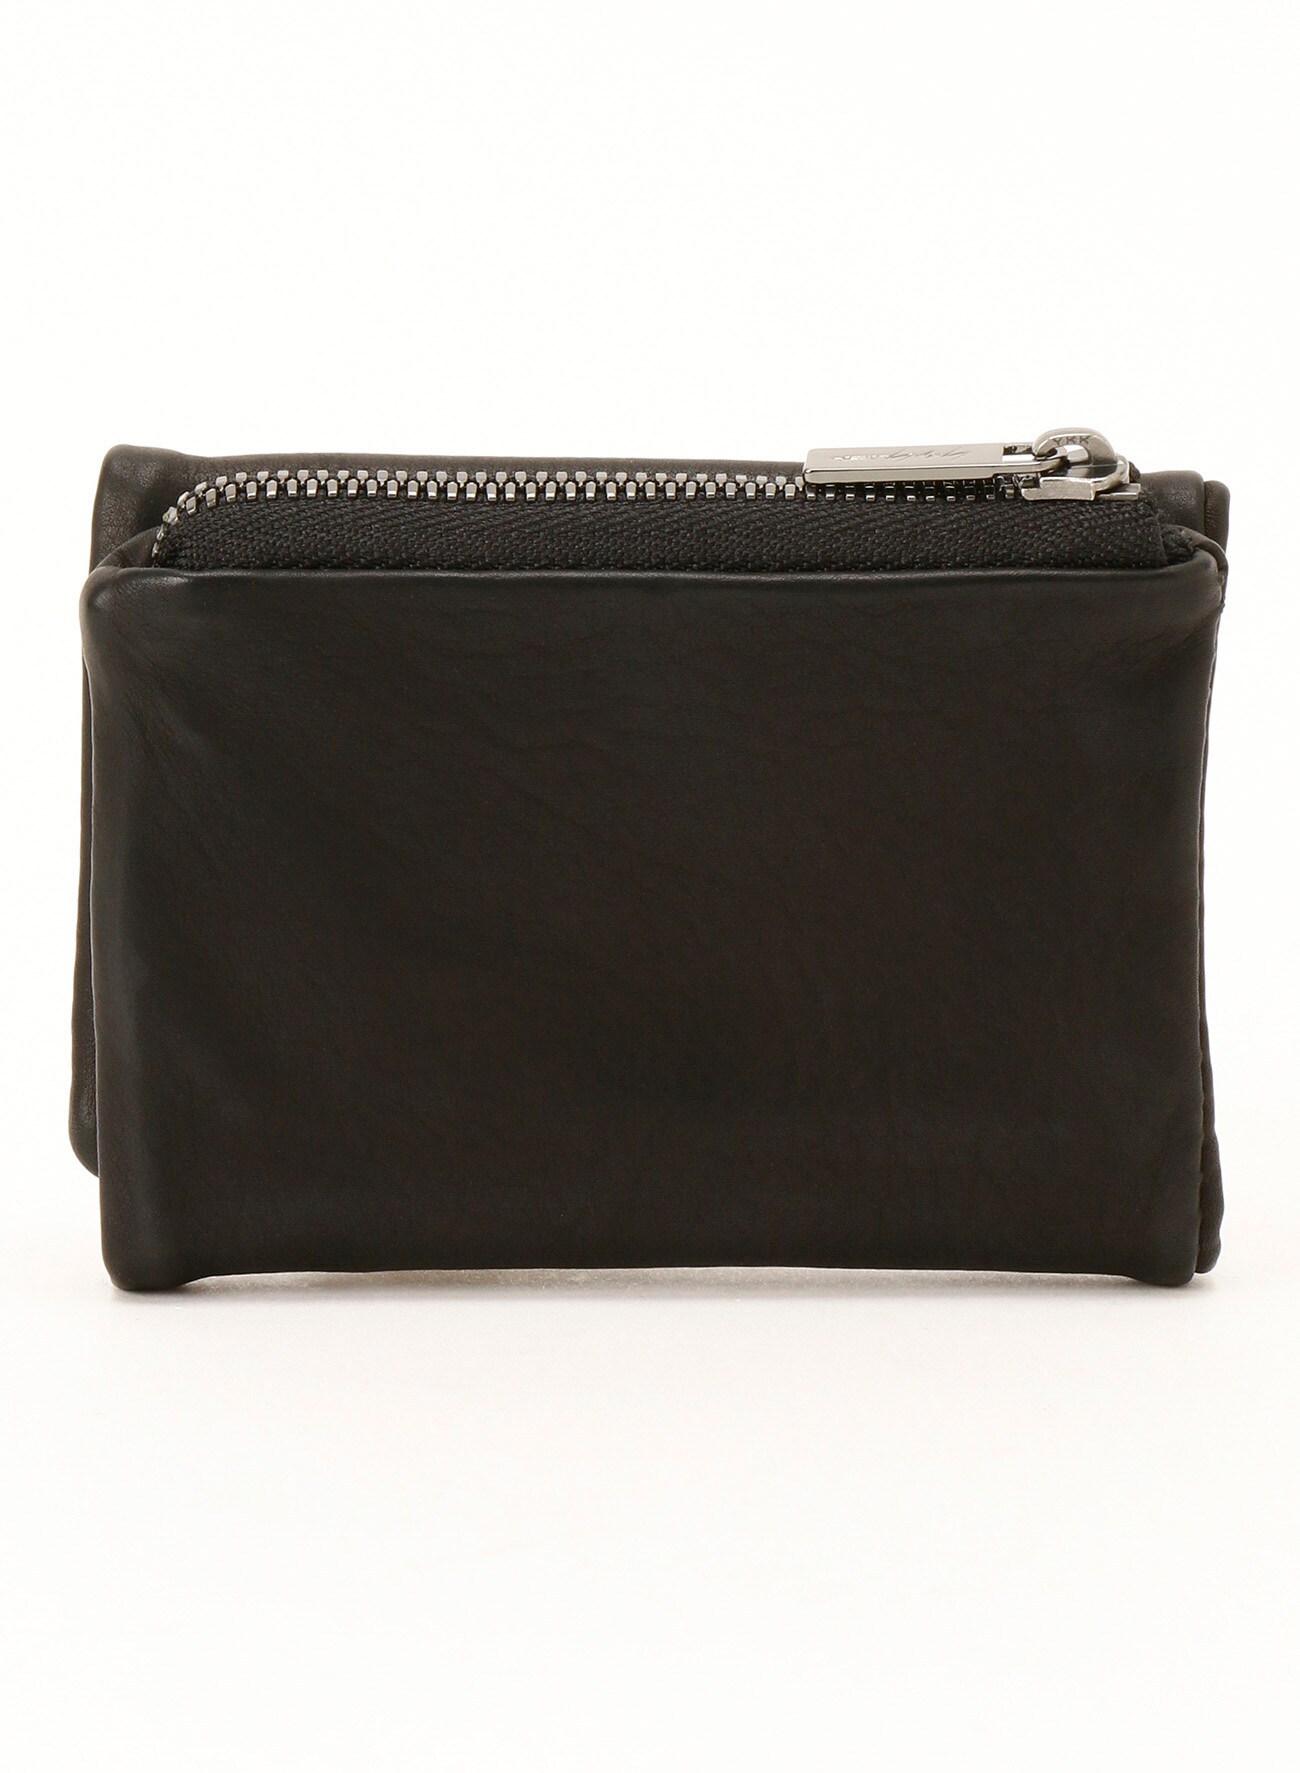 Fold bag wallet